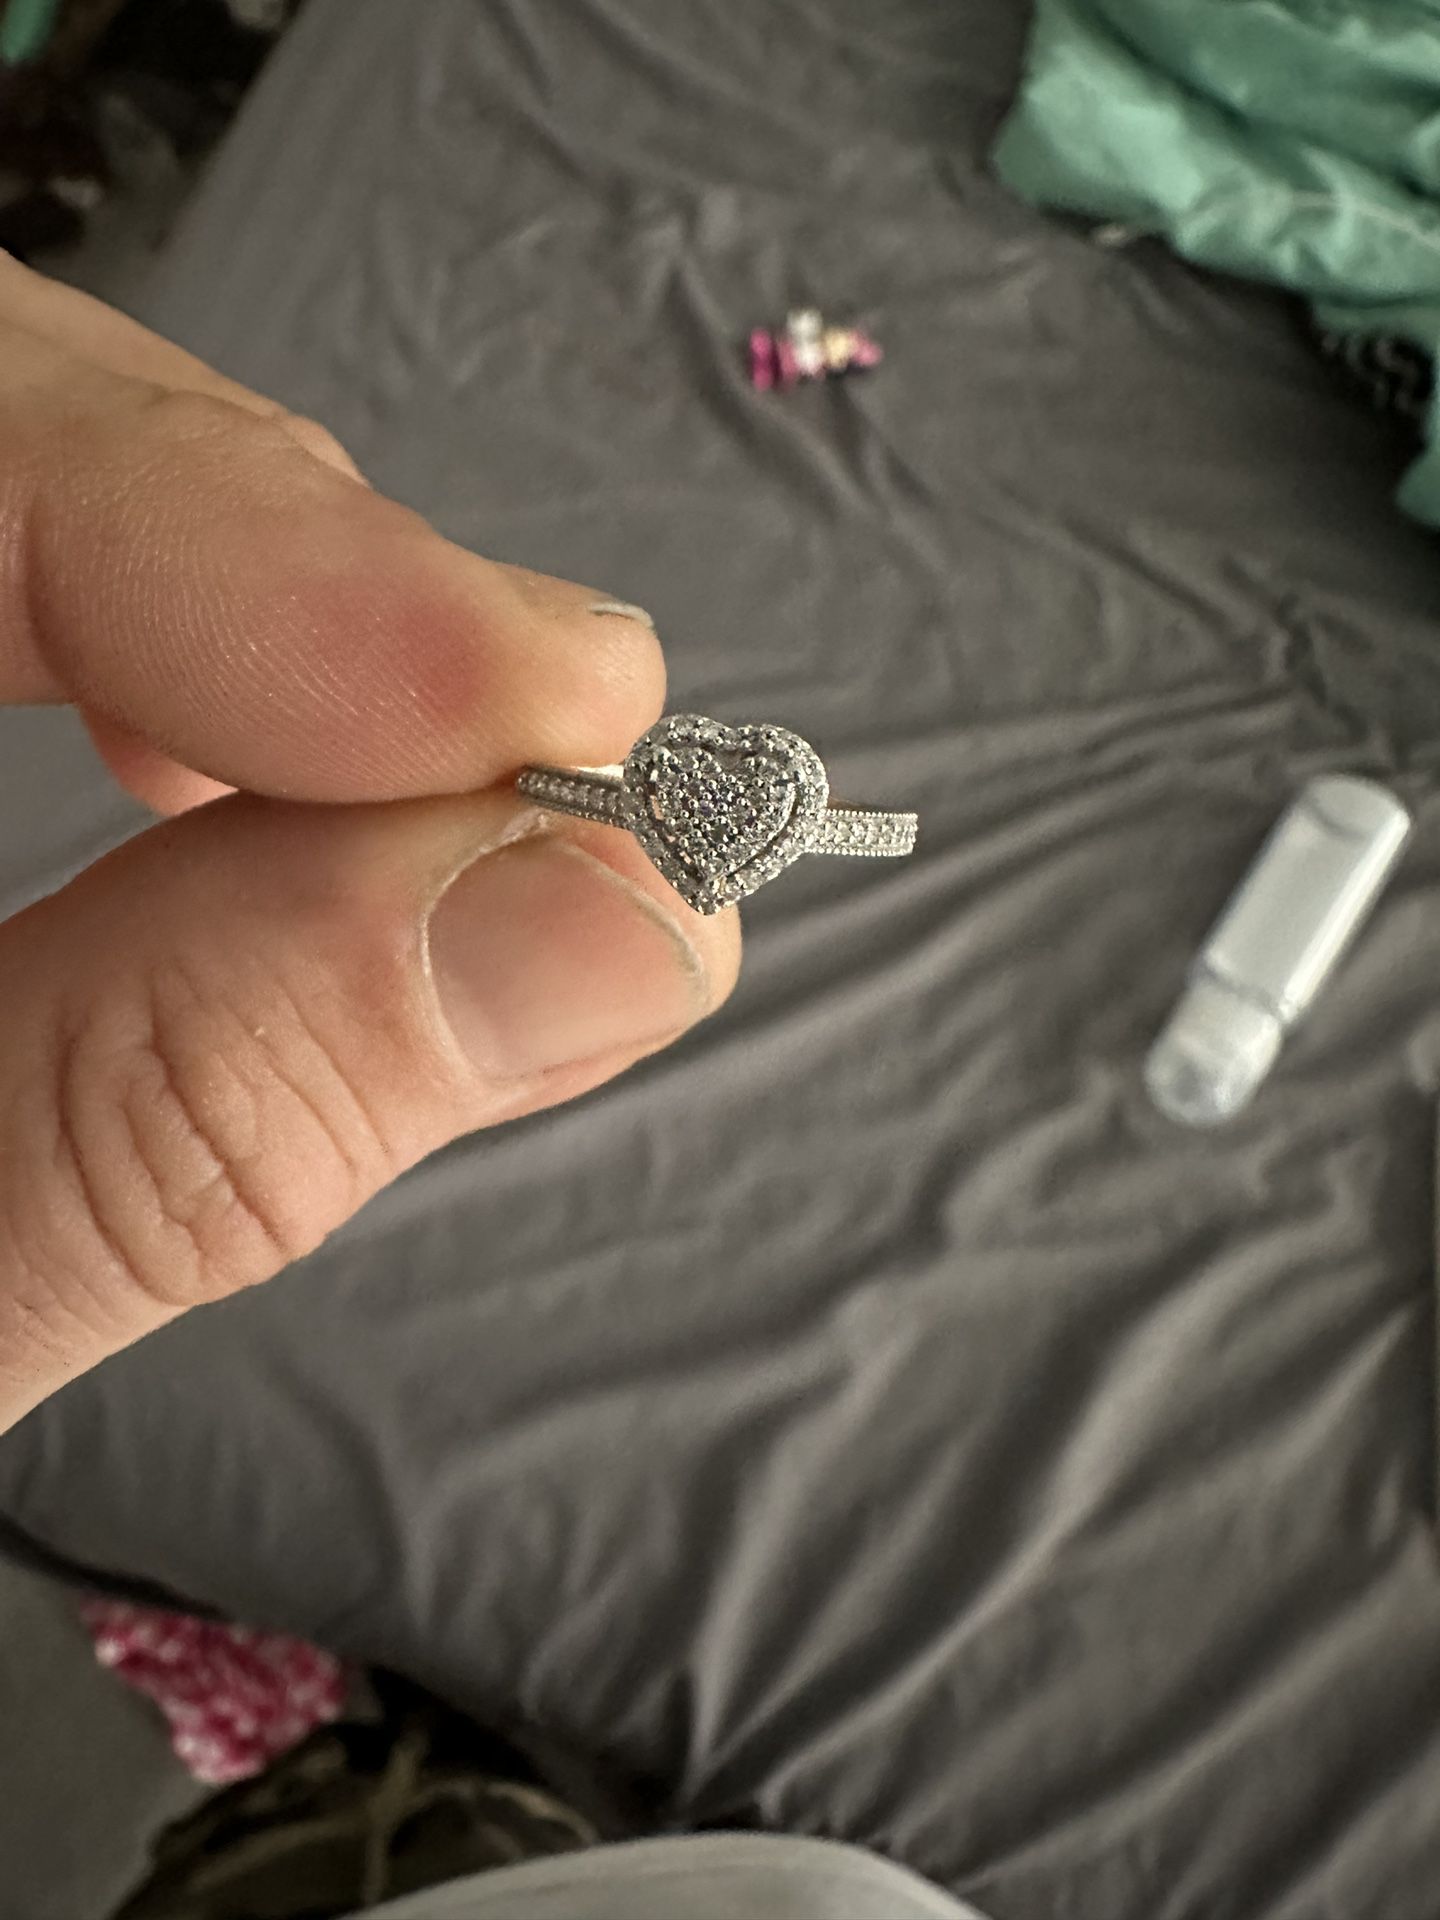 10k White Gold Engagement Ring.